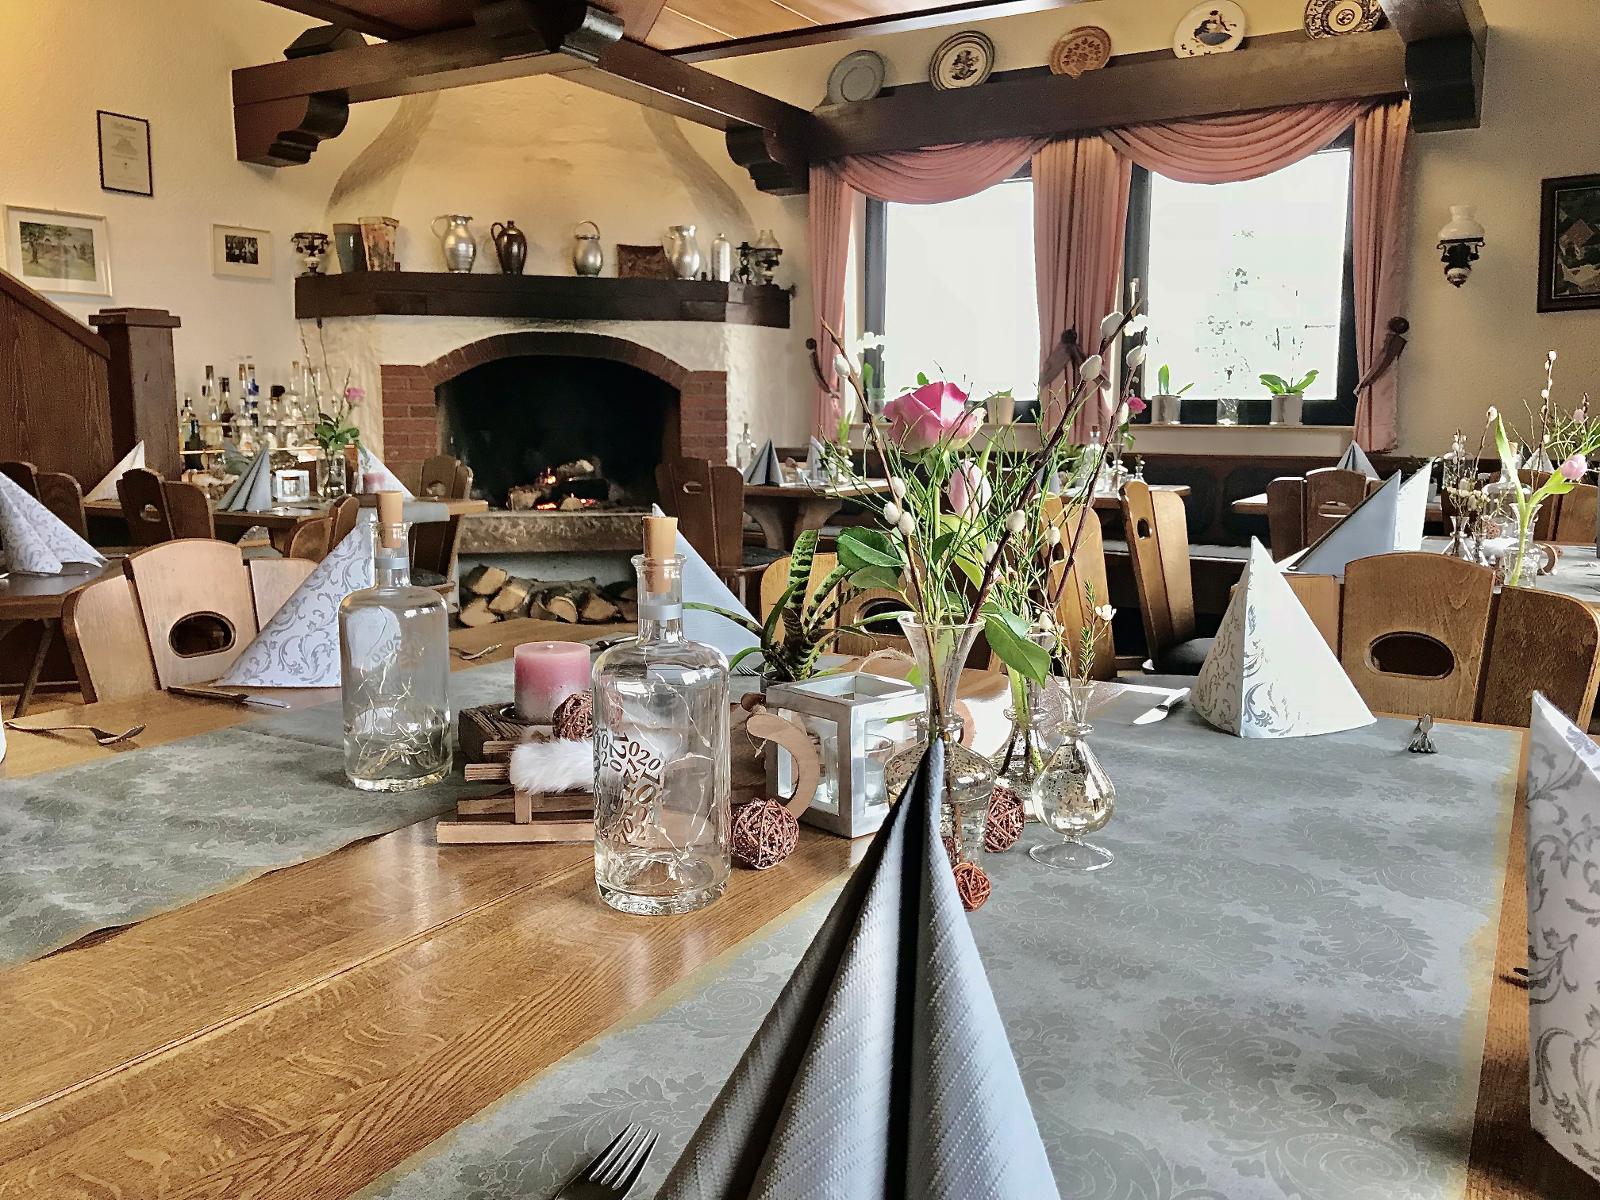 Das Gasthaus Graulich ist für seine gute Küche bekannt und gehört zu den Betrieben von "der Vulkan kocht". Frische und Qualität zeichnen Ihre Küche aus, neben gutbürgerlichen auch modernen Gerichten auf der Standardkarte gibt es aktuelle Saison...